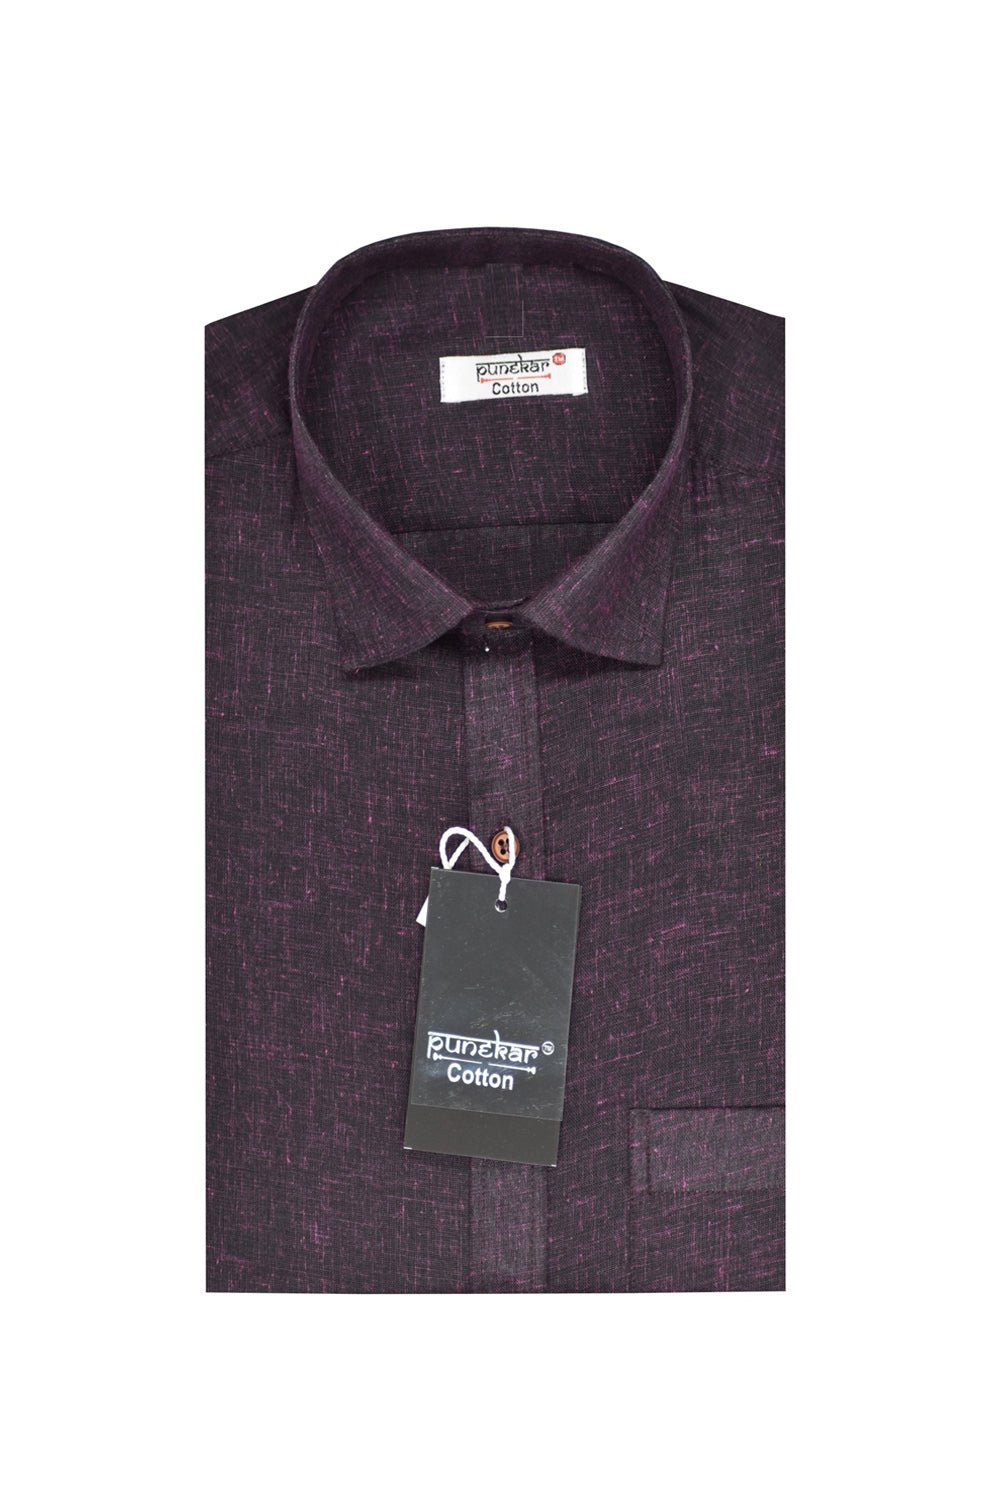 Punekar Cotton Blackish Pink Color Pure Cotton Handmade Formal Shirt for Men's. - Punekar Cotton